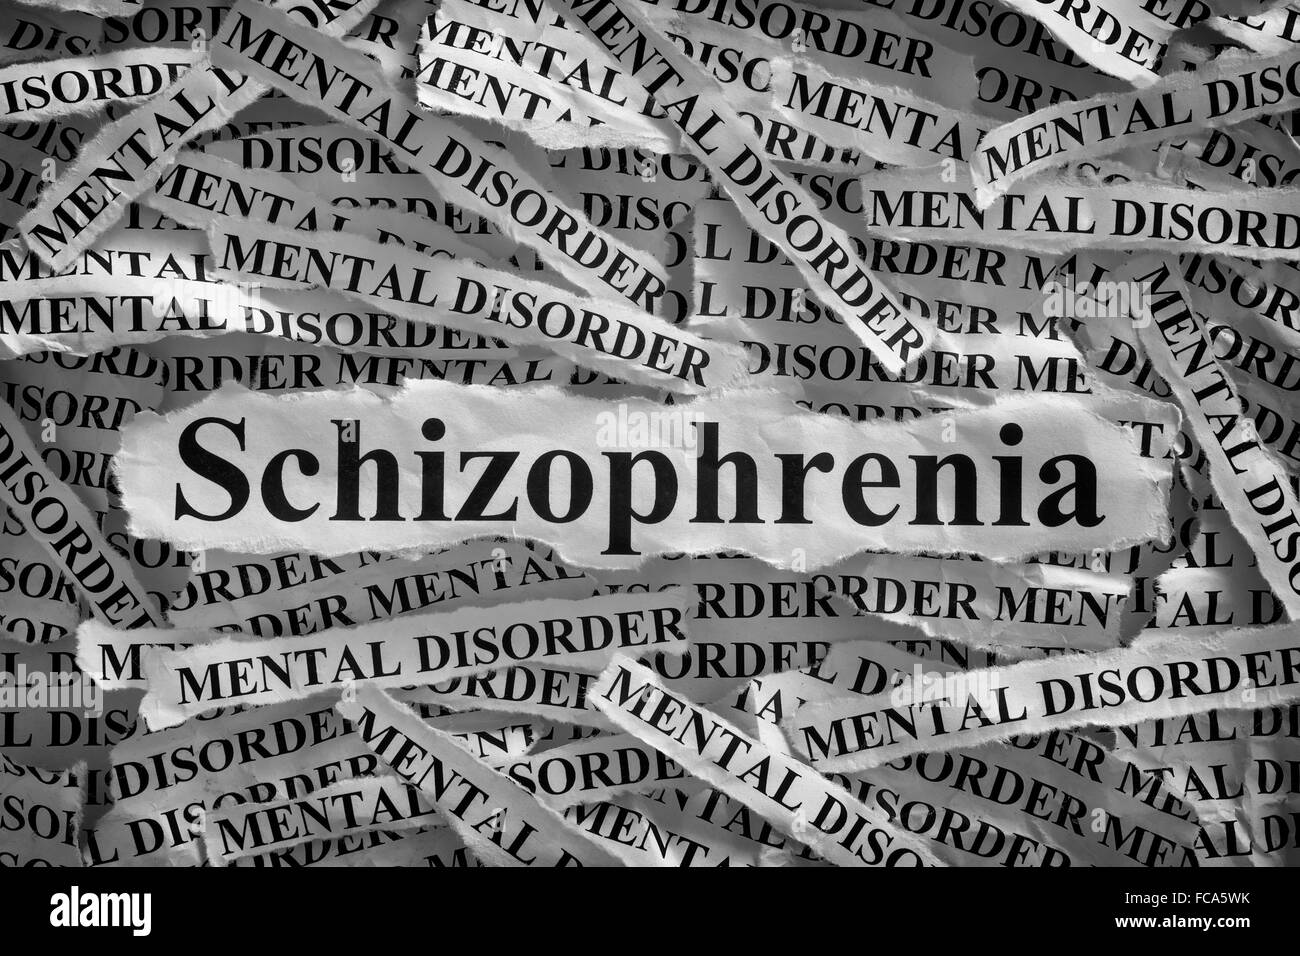 Schizophrenie. Zerrissene Stücke Papier mit dem Wort Schizophrenie und psychische Störung. Konzept-Bild. Schwarz und weiß. Closeup. Stockfoto